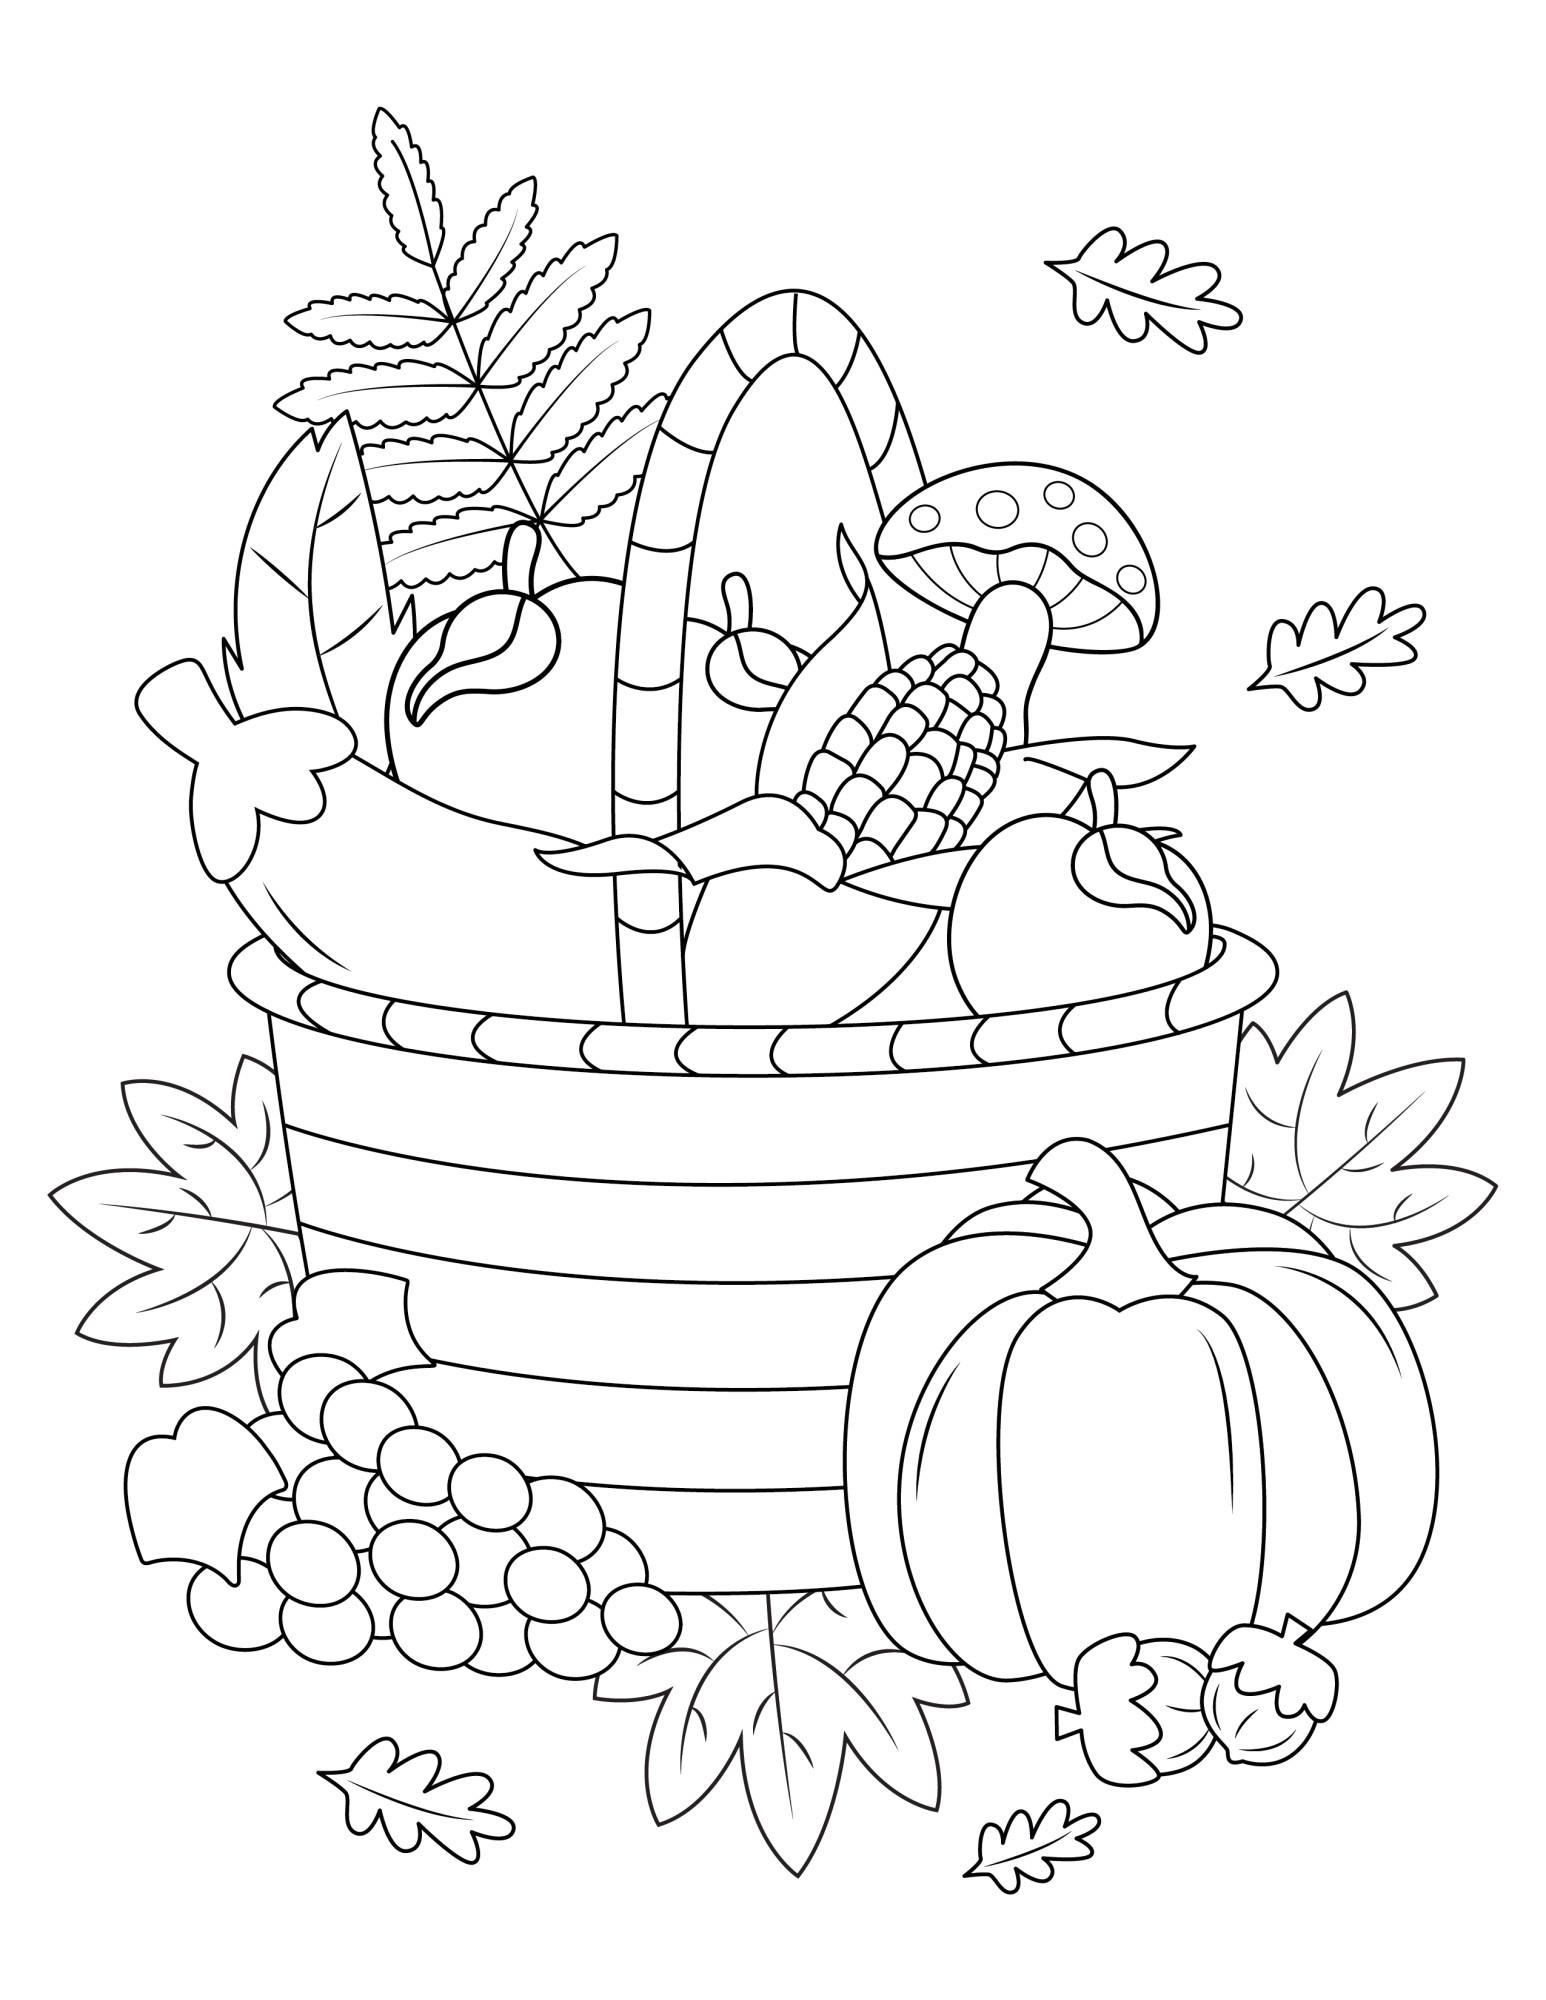 Раскраска для детей: тыква на фоне корзины с овощами